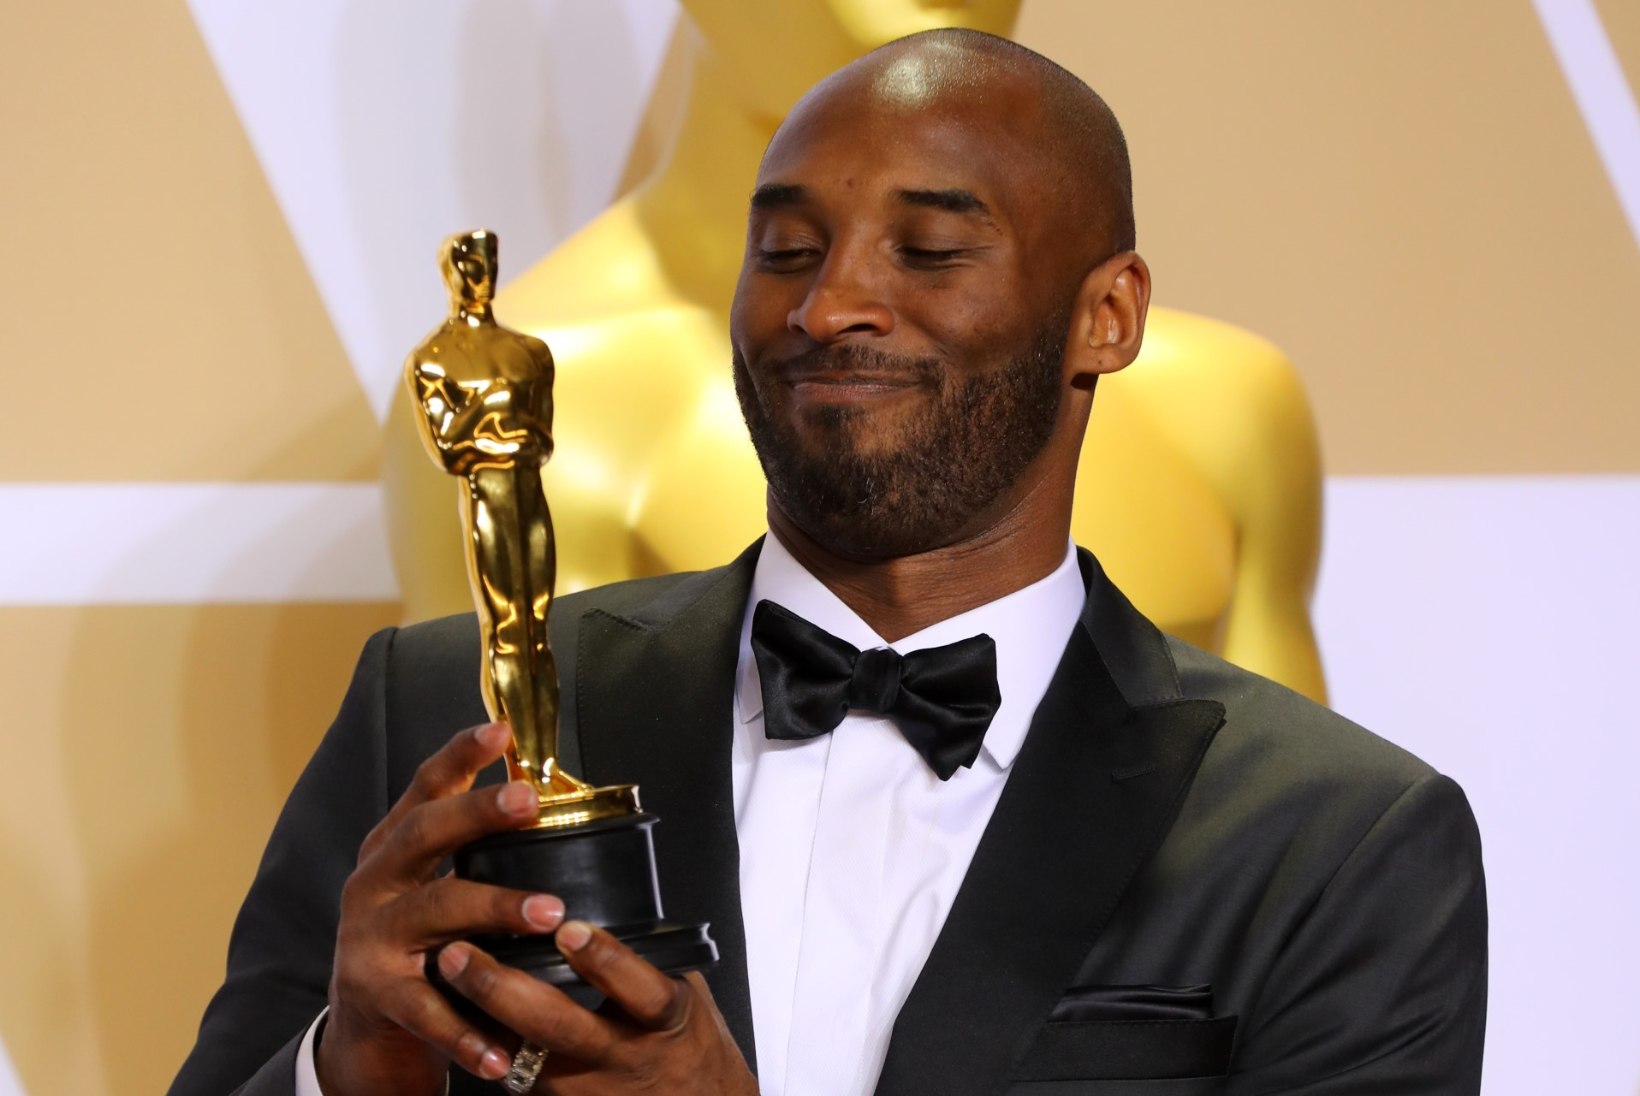 VAATA FILMI! Traagiliselt hukkunud Kobe Bryant oli lisaks spordilegendile ka Oscari-võitja